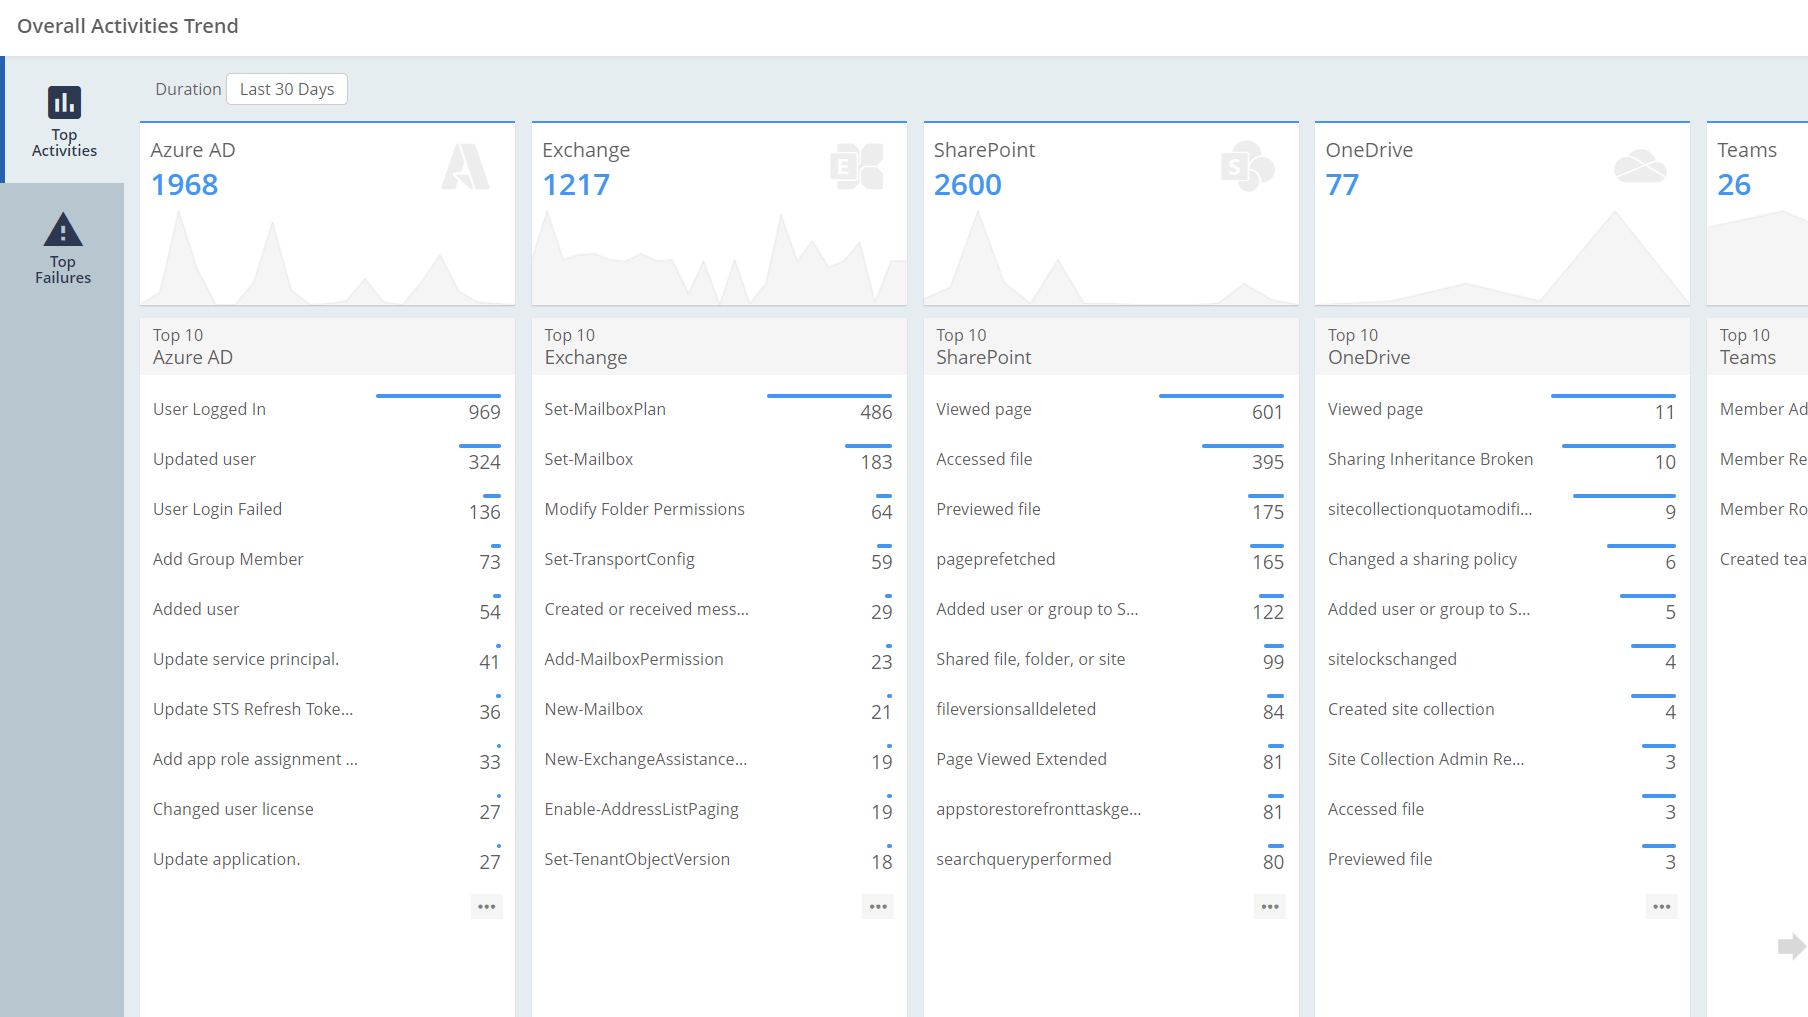 Office 365 Activities Trend